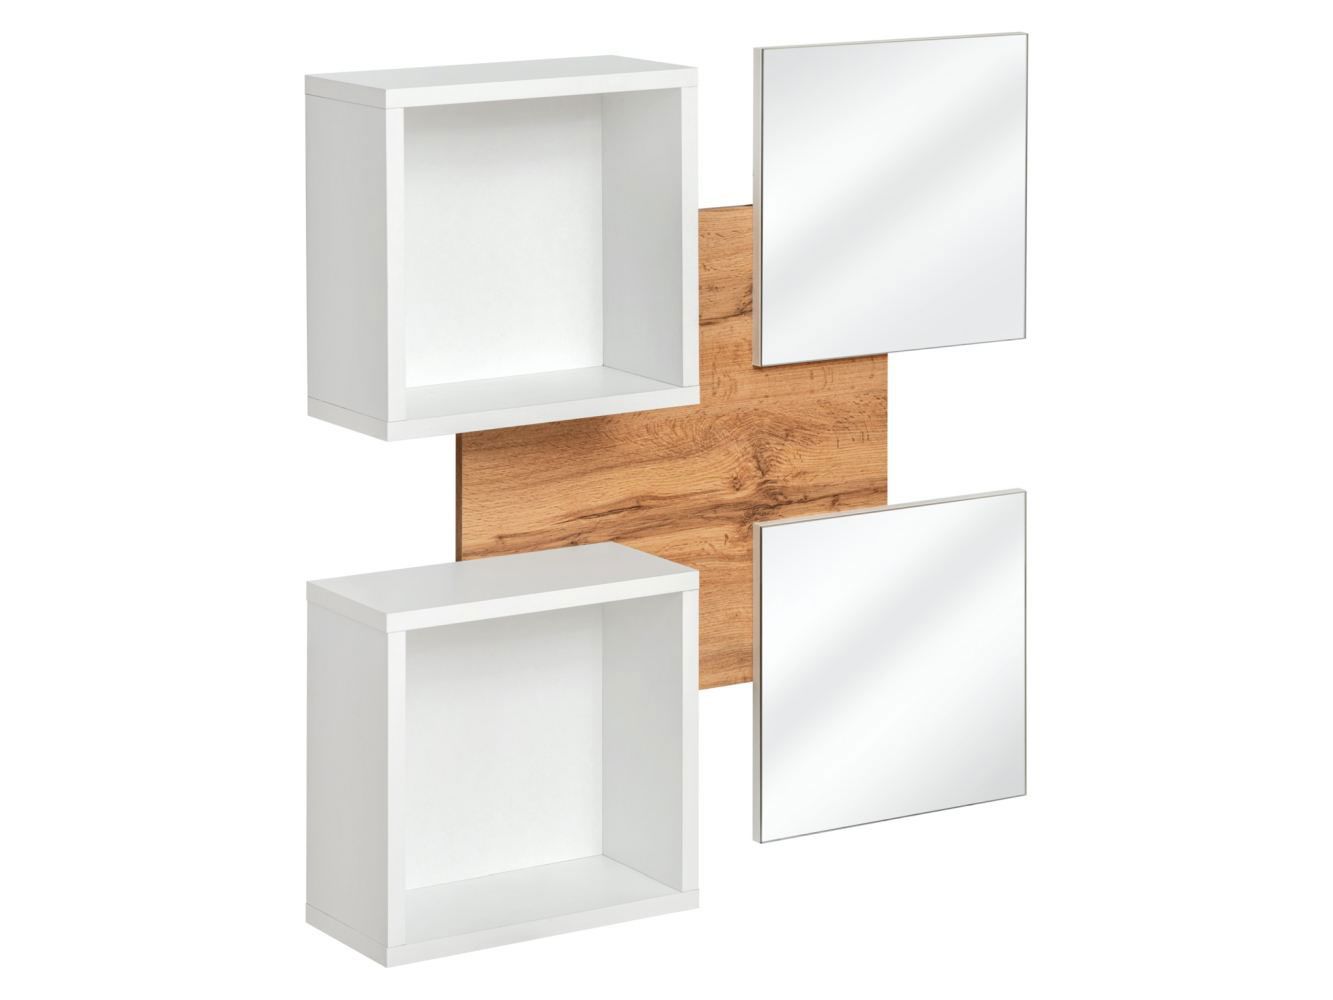 Pannello a parete con due specchi Pollestad 12, colore: rovere Wotan / bianco - Dimensioni: 100 x 100 x 20 cm (A x L x P), con due mensole a parete